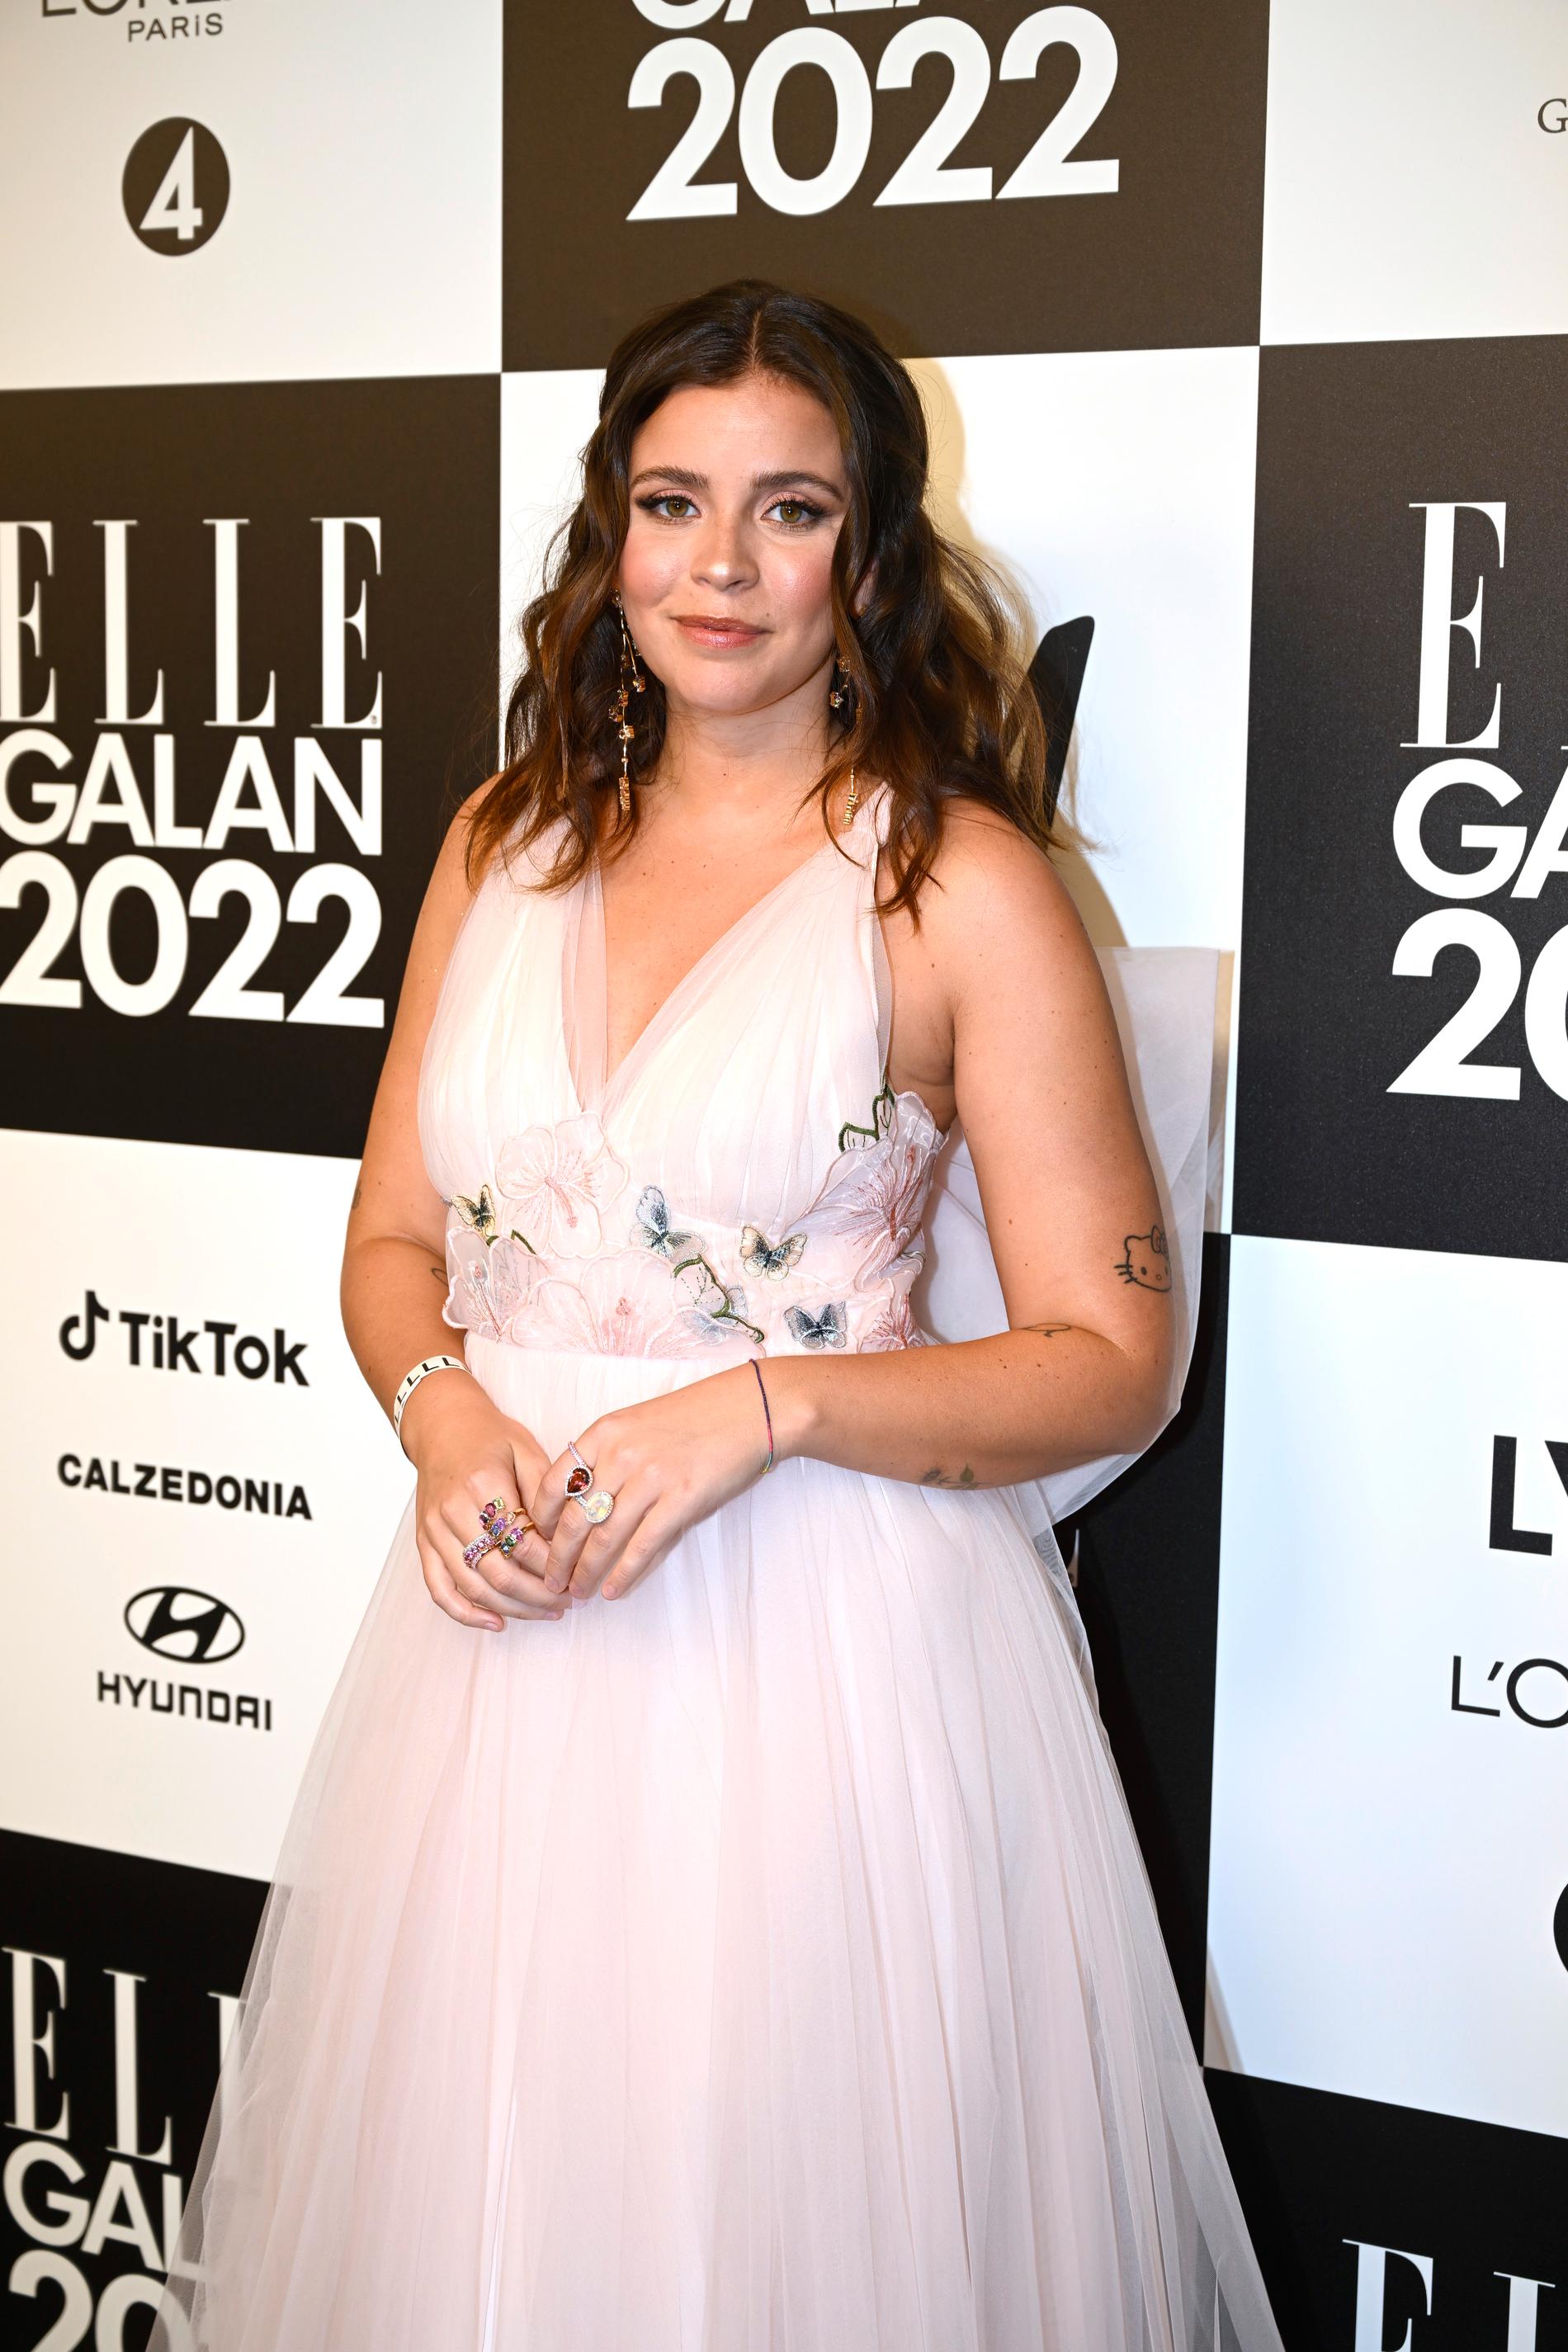 Nicole på Elle-galans röda matta i april 2022